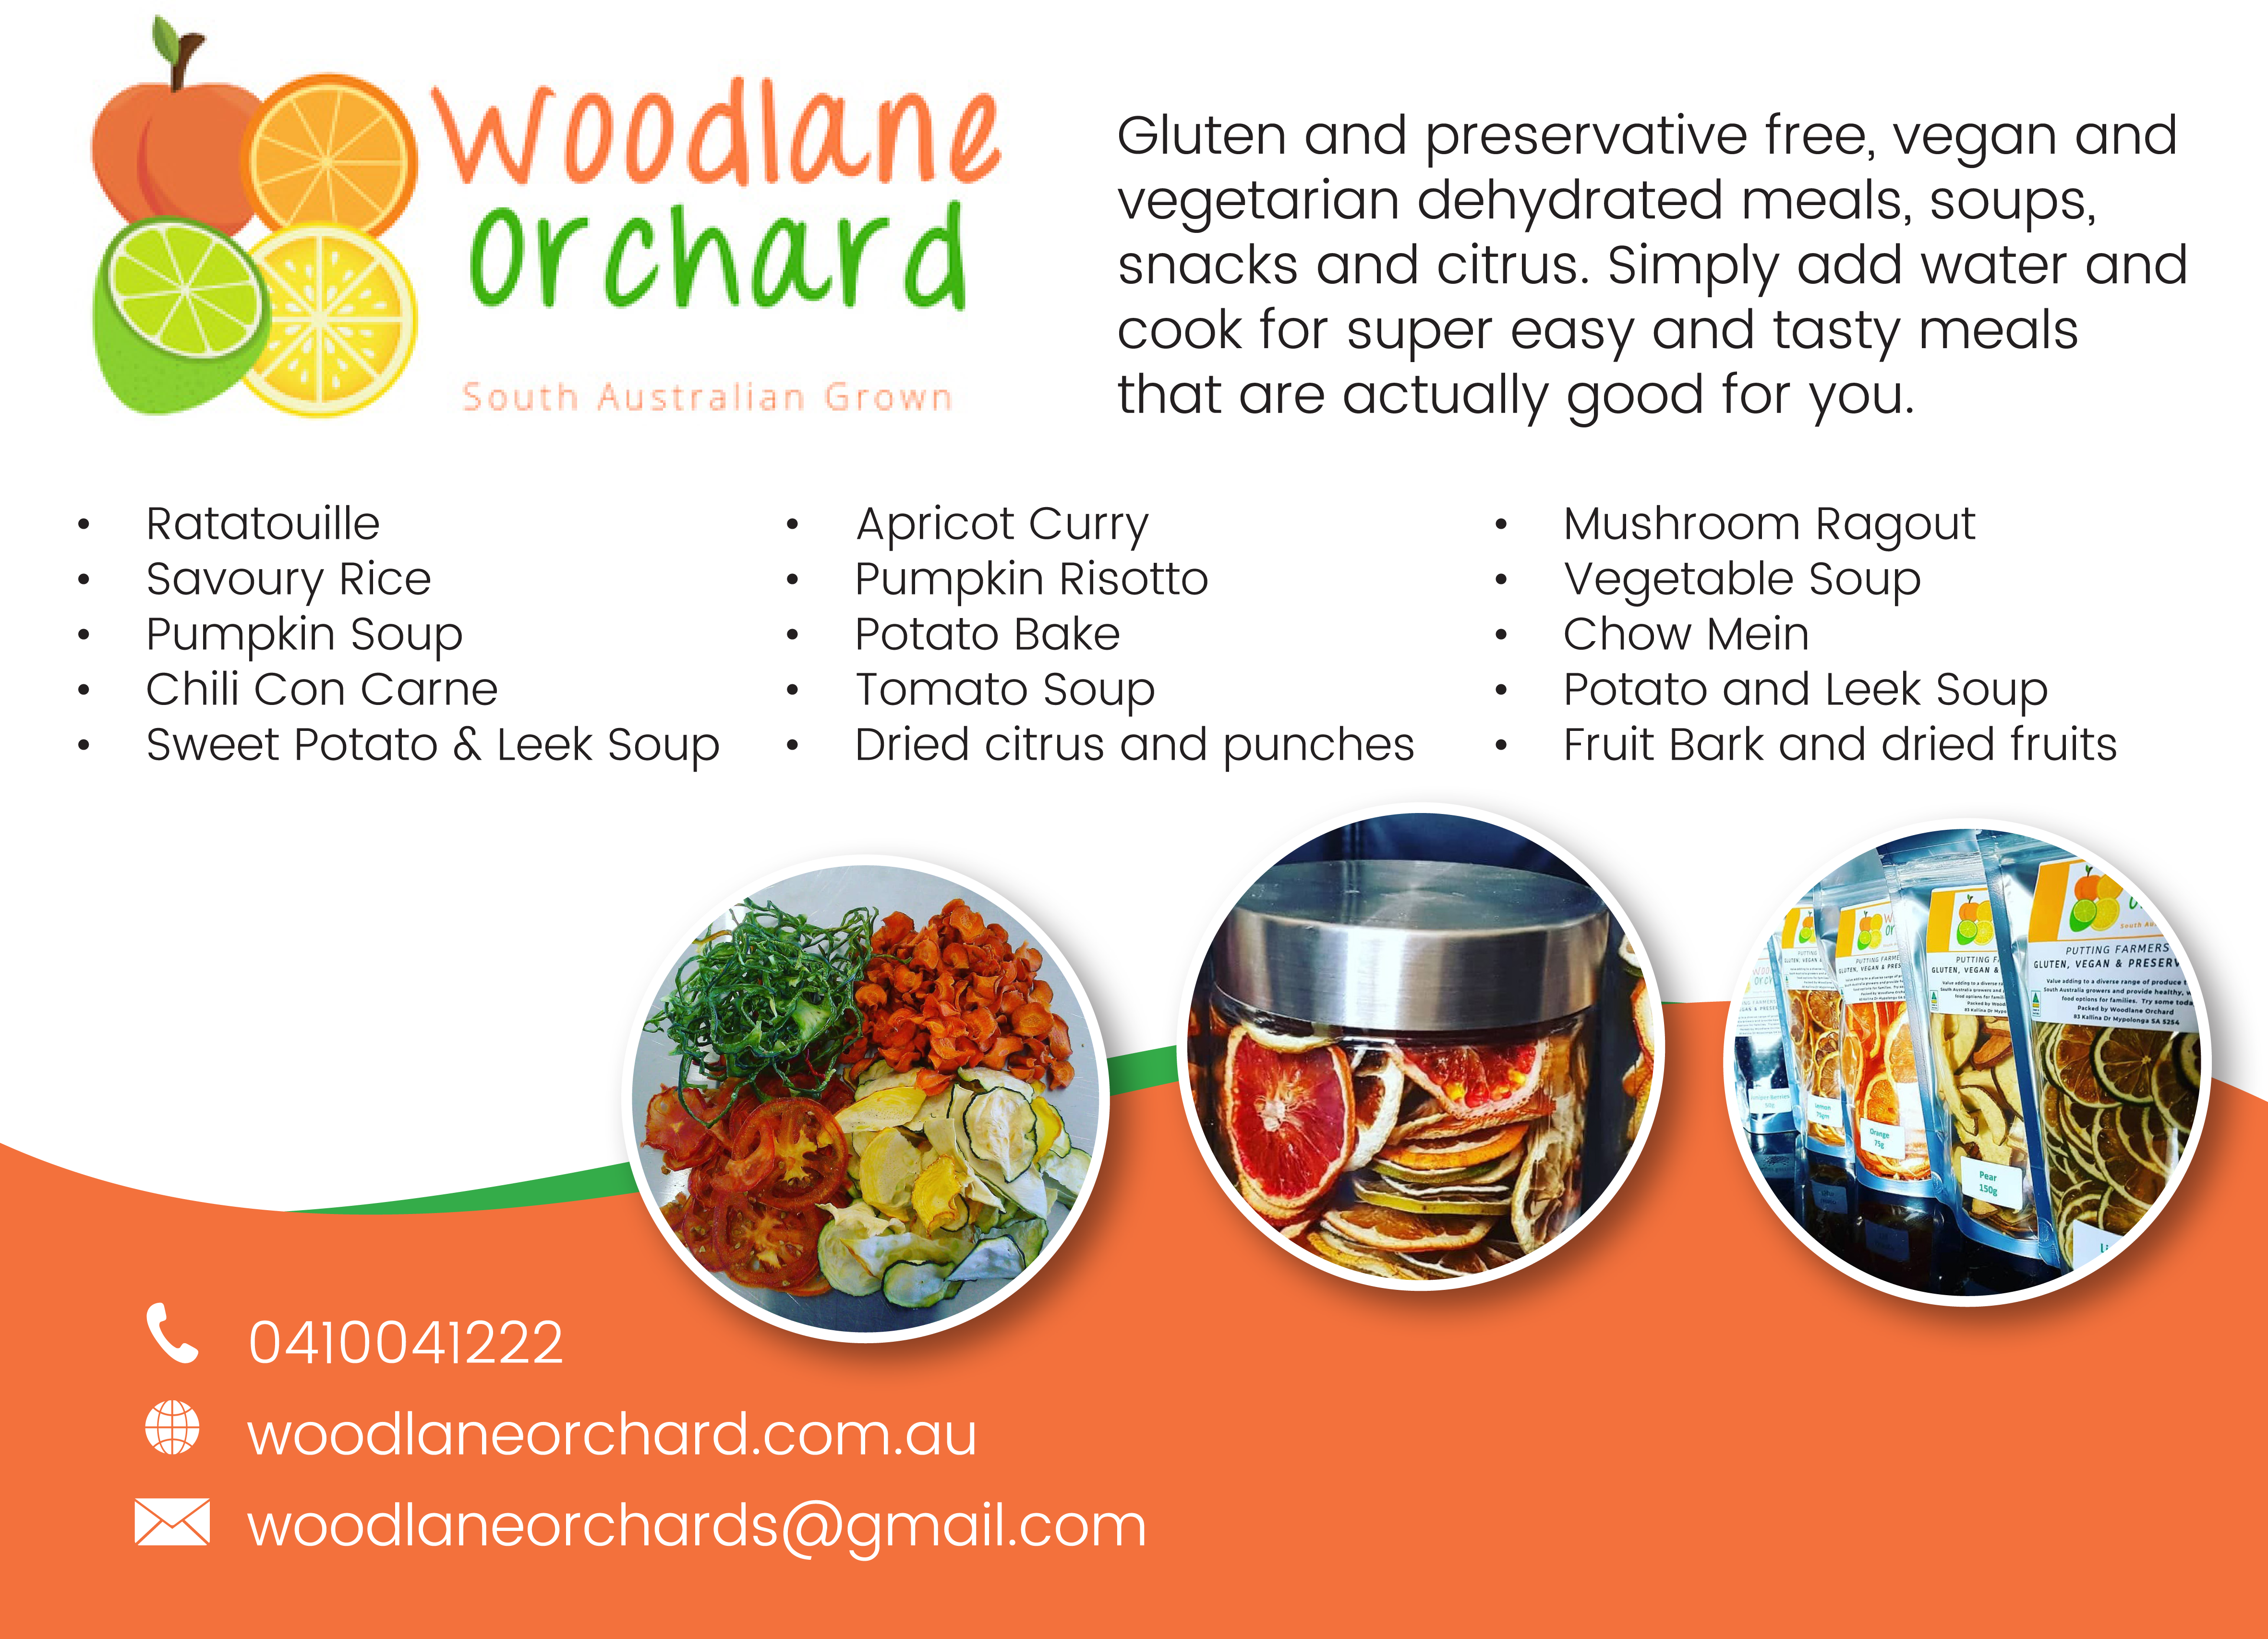 Woodlane Orchard